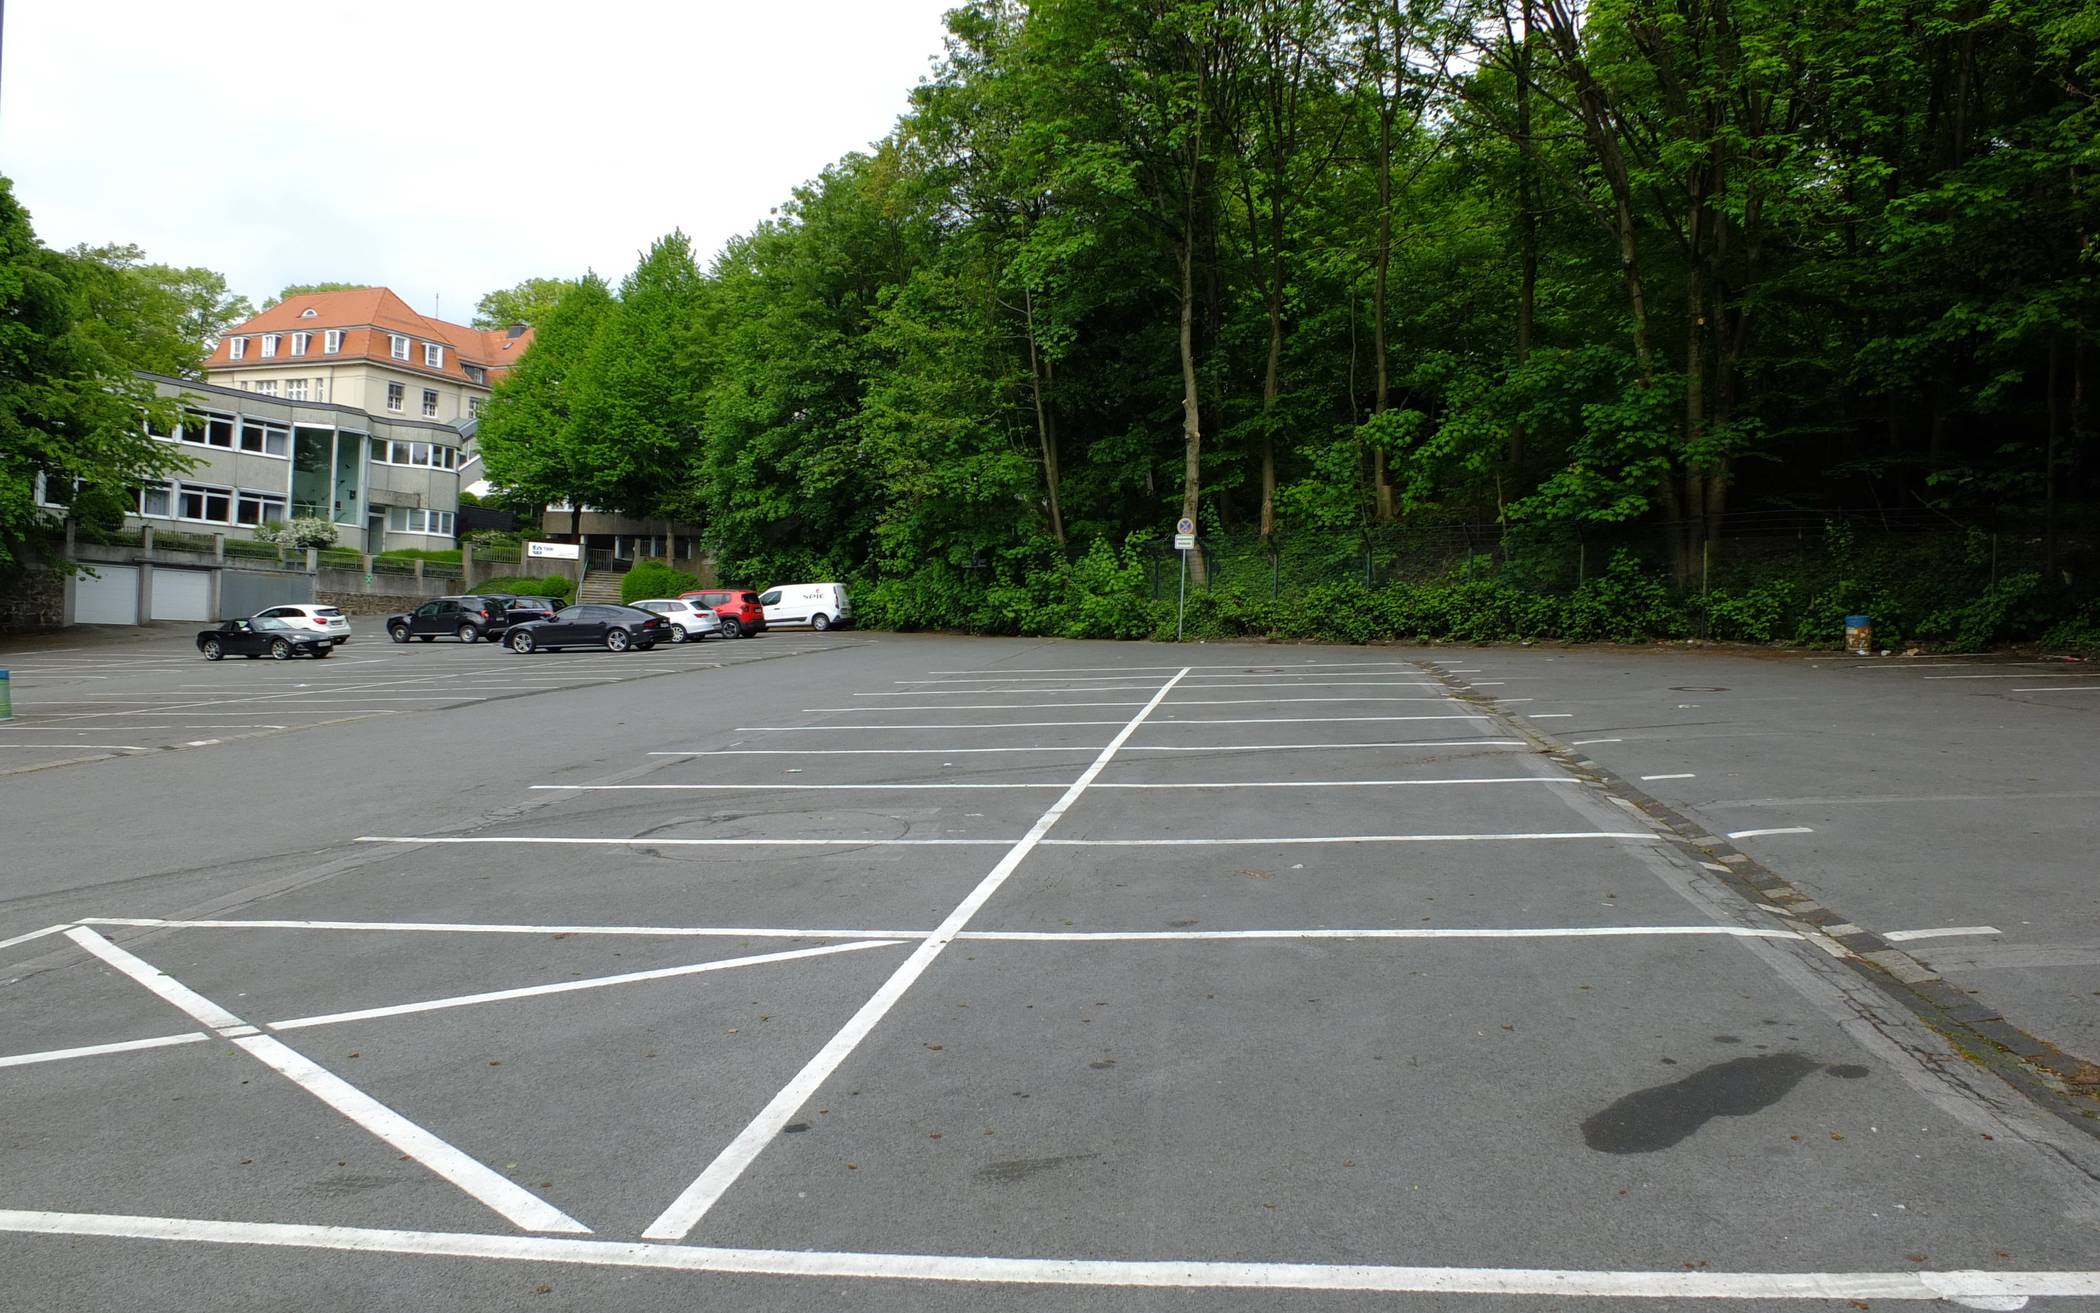  Der Parkplatz am Boettinger Weg (Symbolbild) in unmittelbarer Nähe des Zoos. 